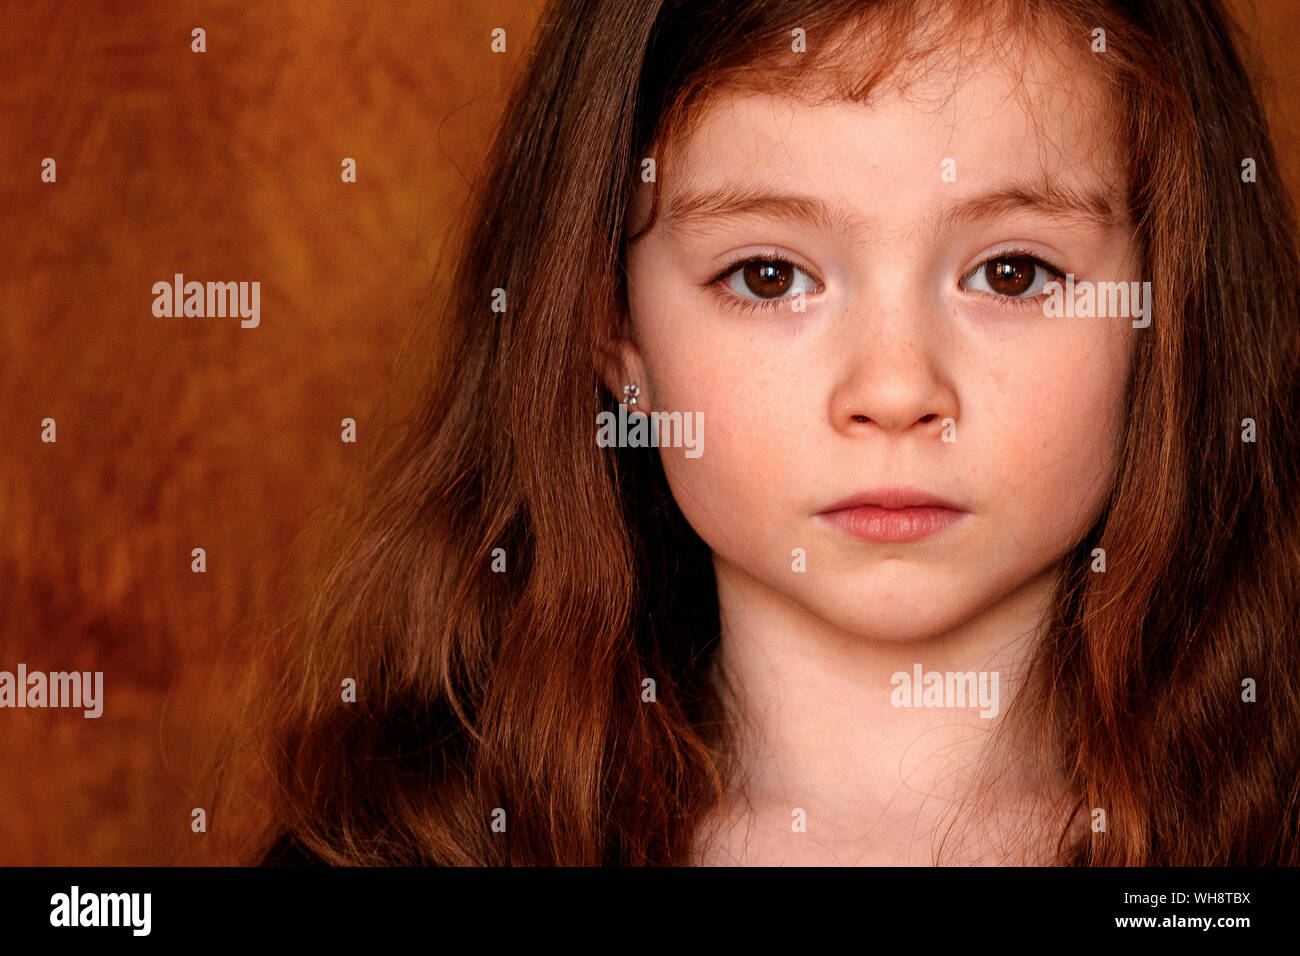 Bambino Di 8 Anni Con Gli Occhi Castani Immagine Stock - Immagine